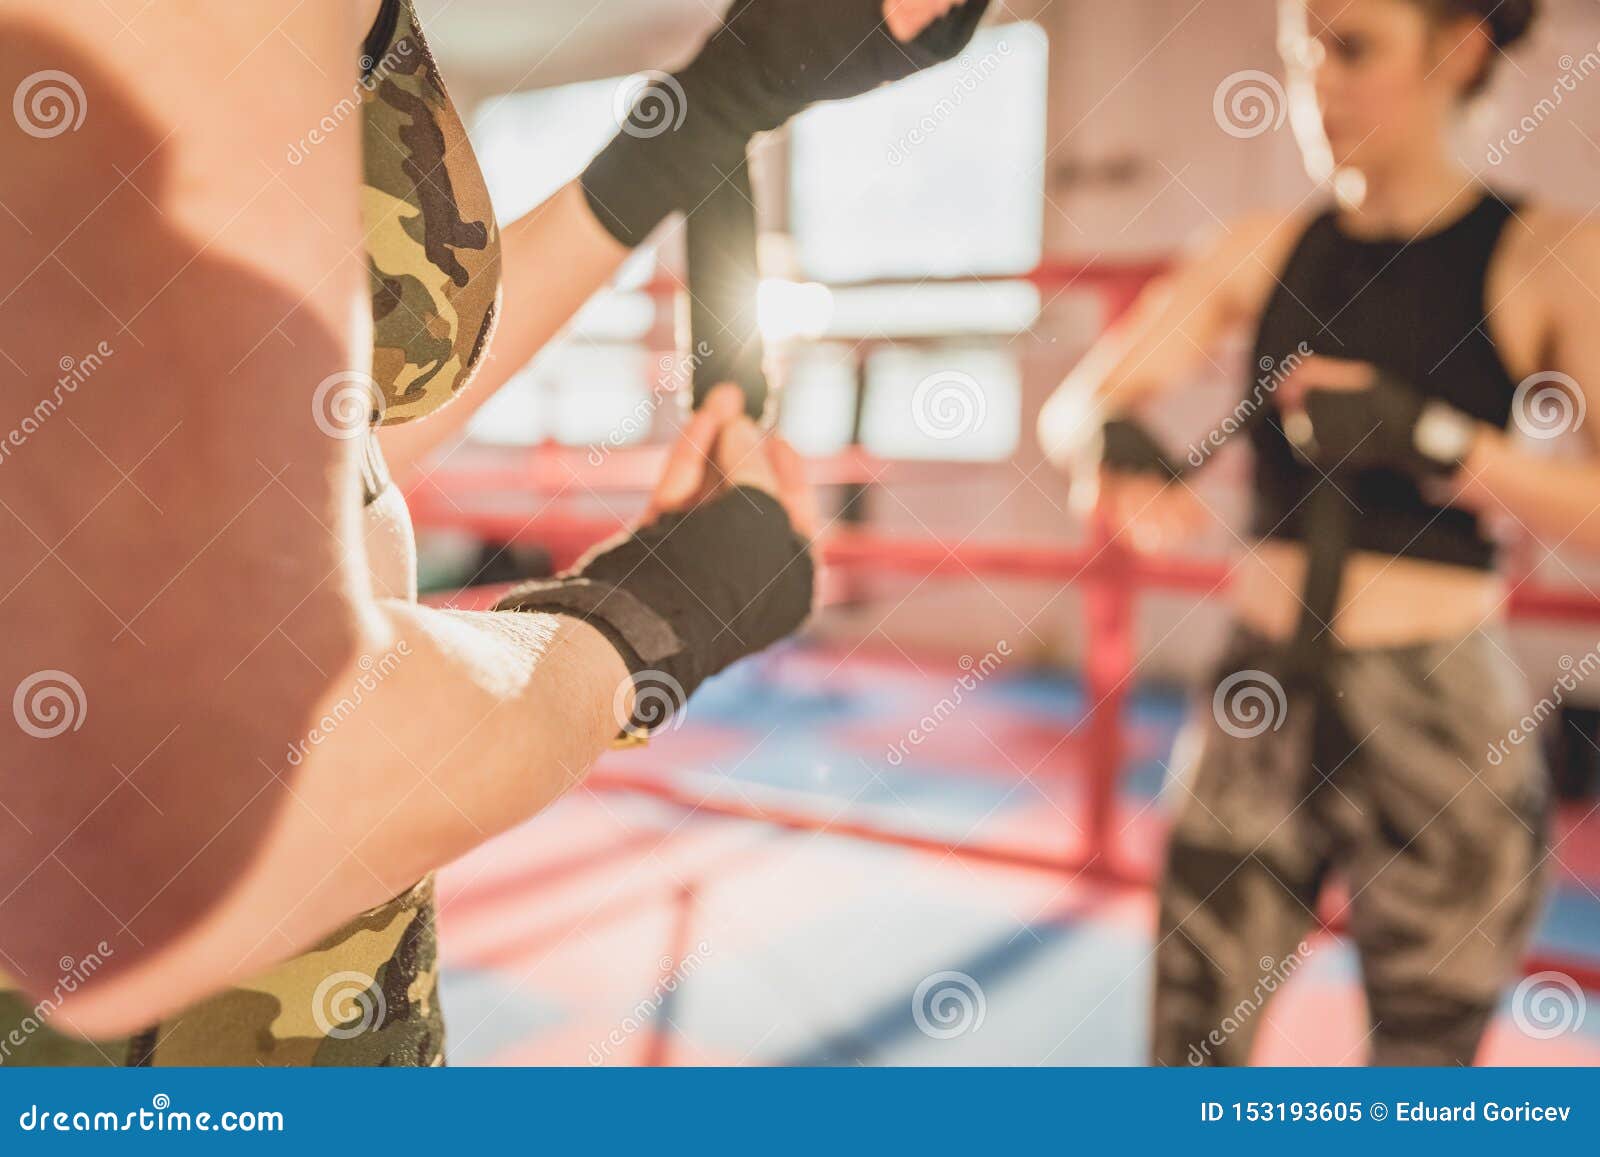 Доверие 43. MMA Fighter in Gym. Девушка тренирует и подготавливает глотку.